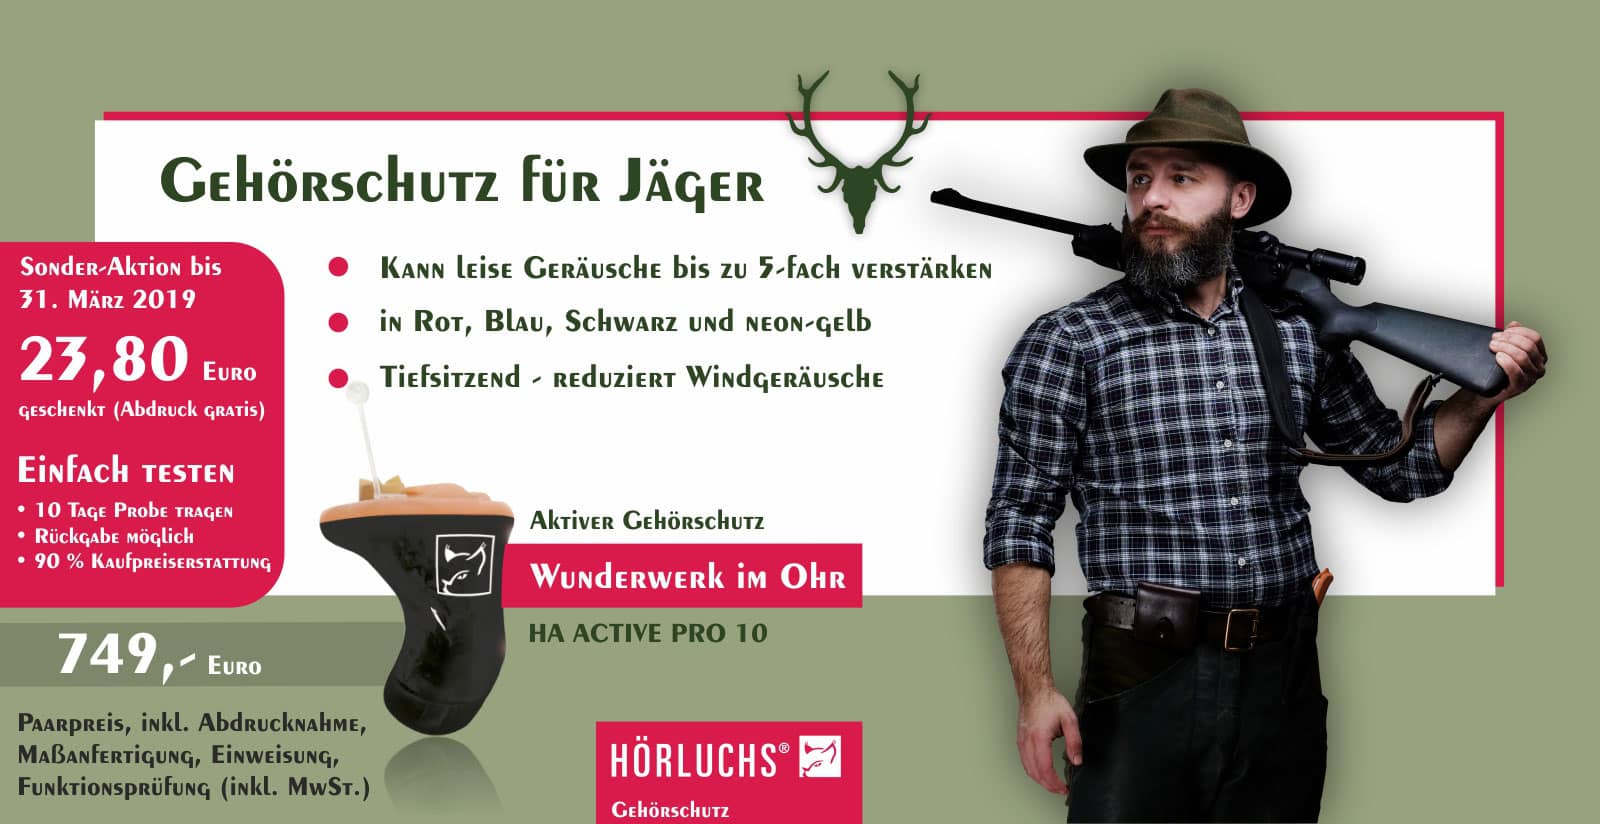 Gehörschutz für Jäger - Gisbrecht Hörakustik - Hörluchs Ha active Pro 10